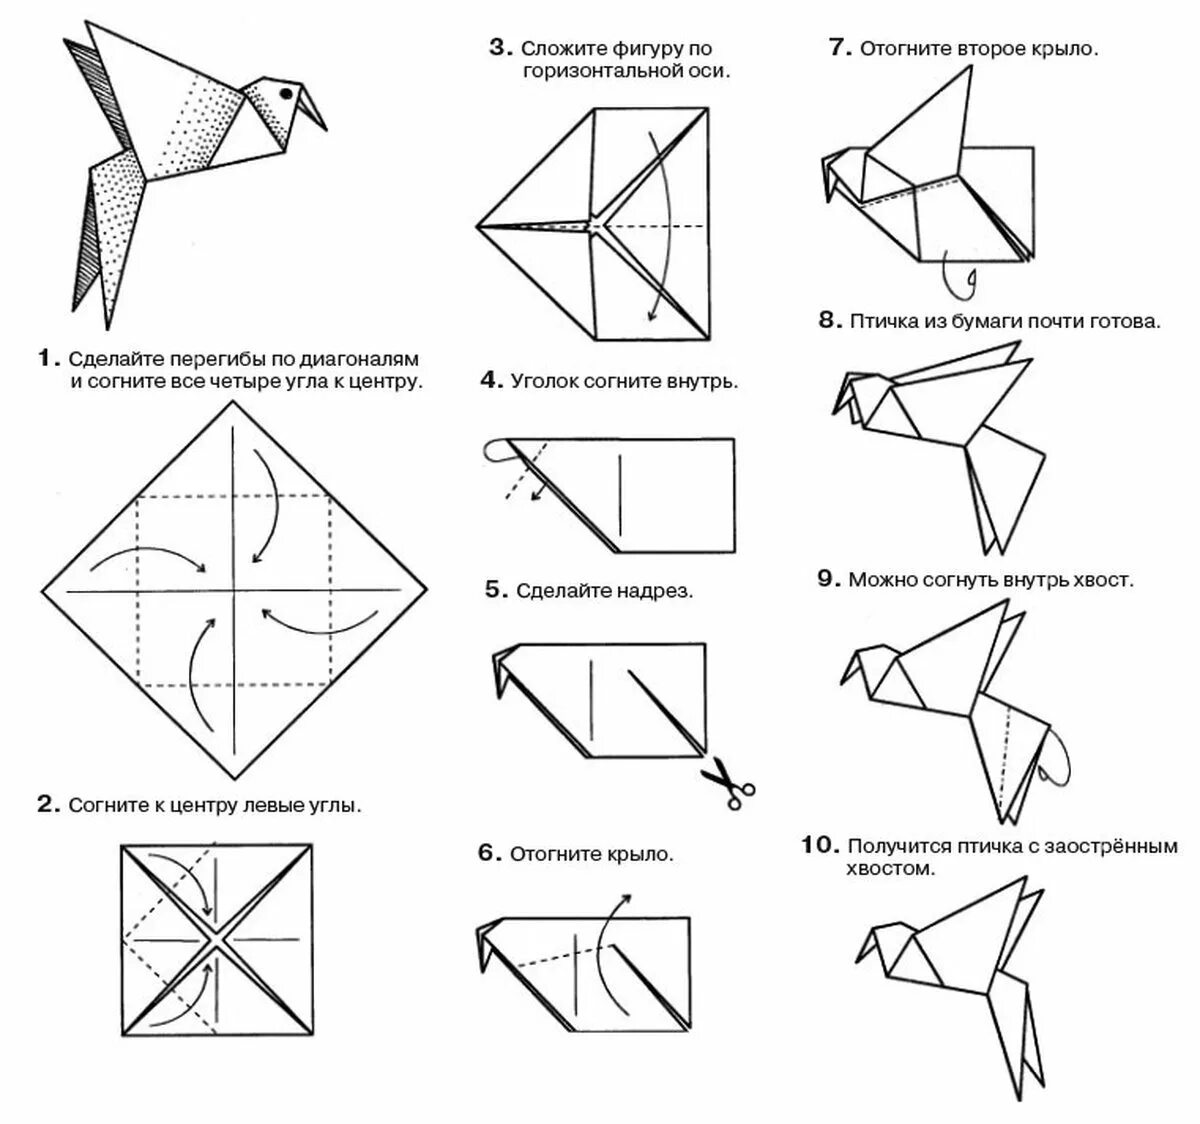 2 поделки оригами. Птичка из бумаги схема складывания пошагово. Птица оригами из бумаги простая схема для детей. Оригами из бумаги пошагово 3 класс. Оригами из бумаги для детей инструкция пошагово.